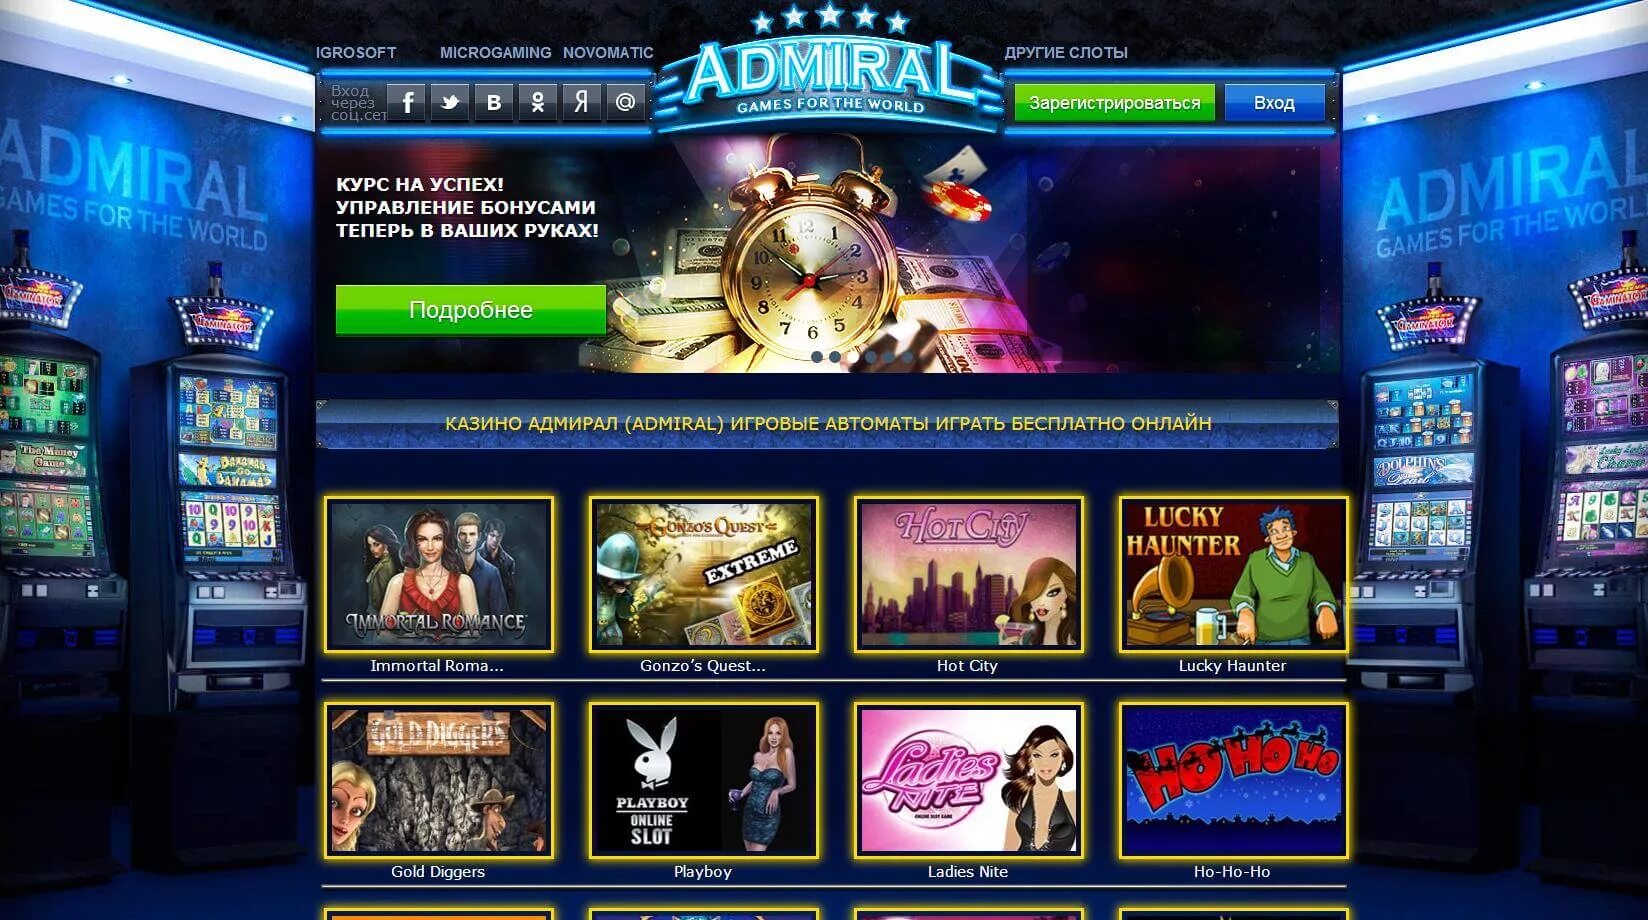 Адмирал casino games admiral game com ru. Интернет казино игровые аппараты Admiral. Адмирал казино игровые автоматы. Игровые автоматы Адмирал 777 на деньги. Адмирал слот игровой автомат.